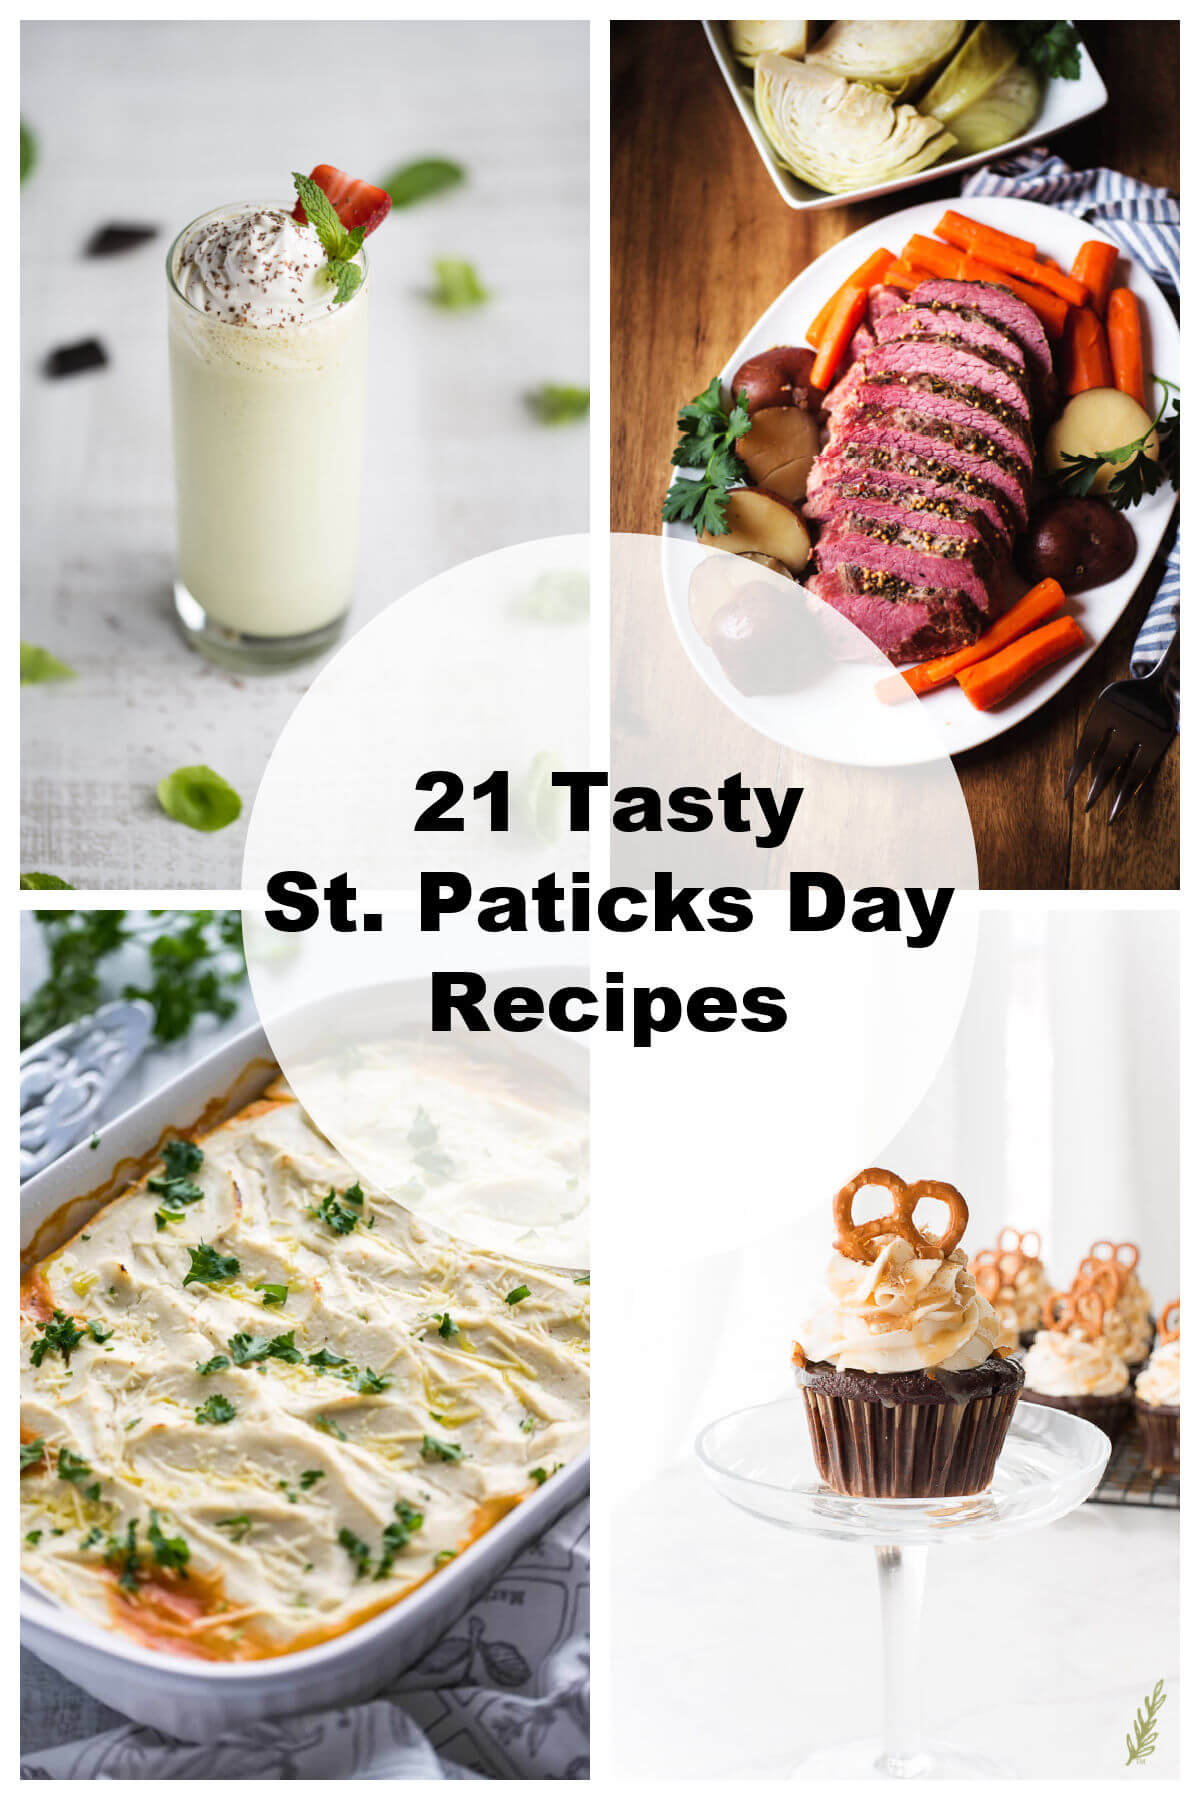 21 Tasty St. Patrick’s Day Recipes